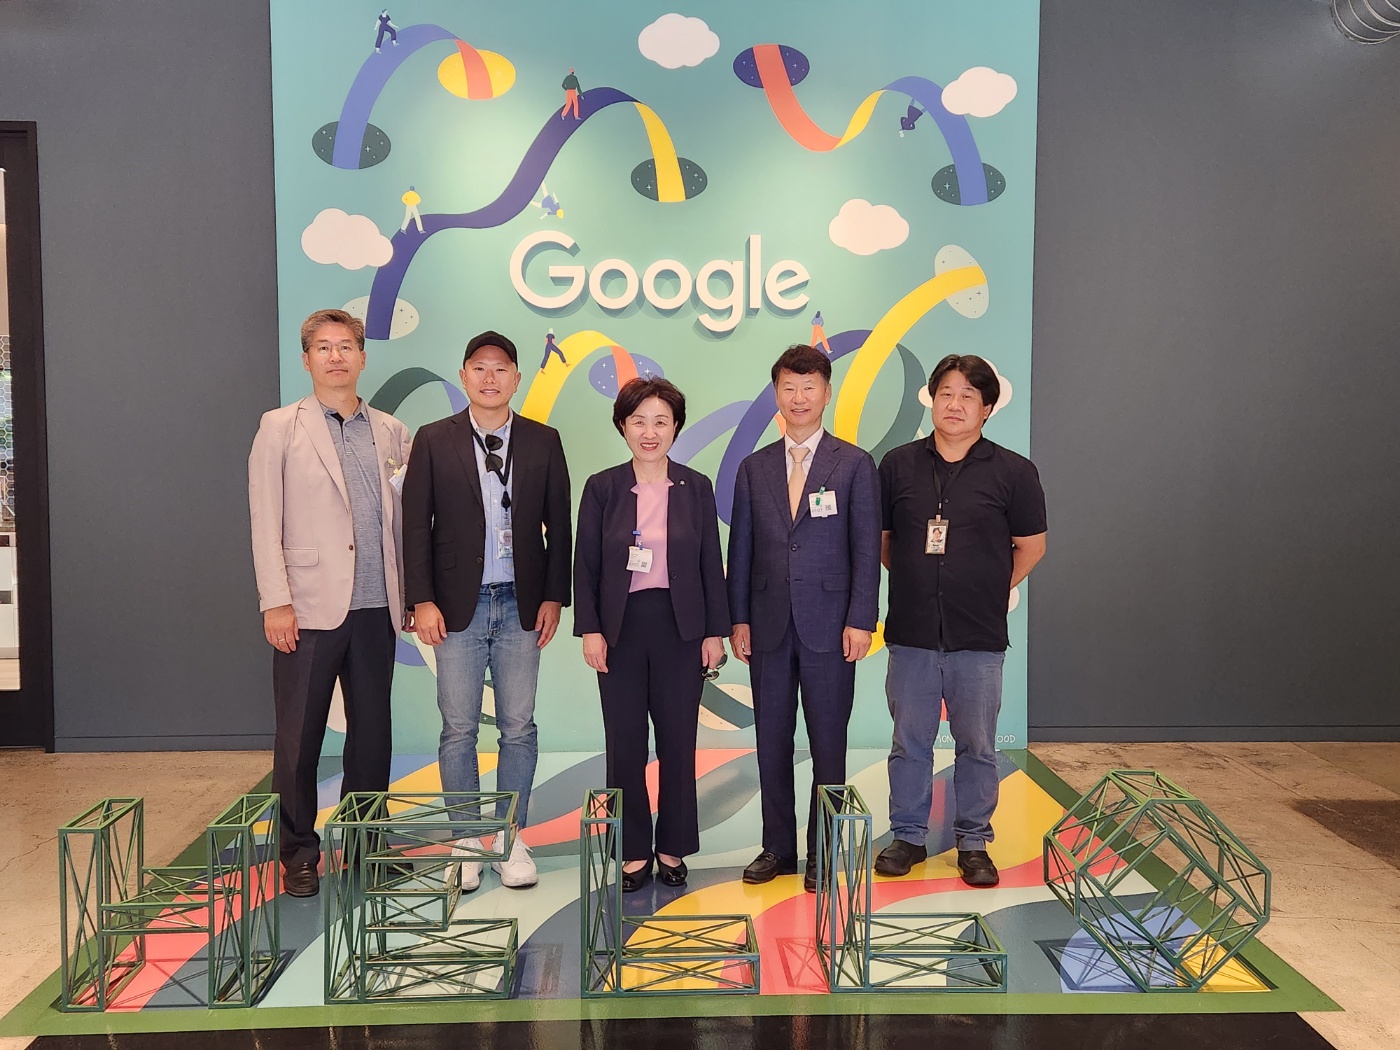 가운데 중년으로 보이는 여성이 서 있고, 좌우로 두 명씩 남성이 서 있다. 뒤로는 Google이라고 써진 글자가 보인다.